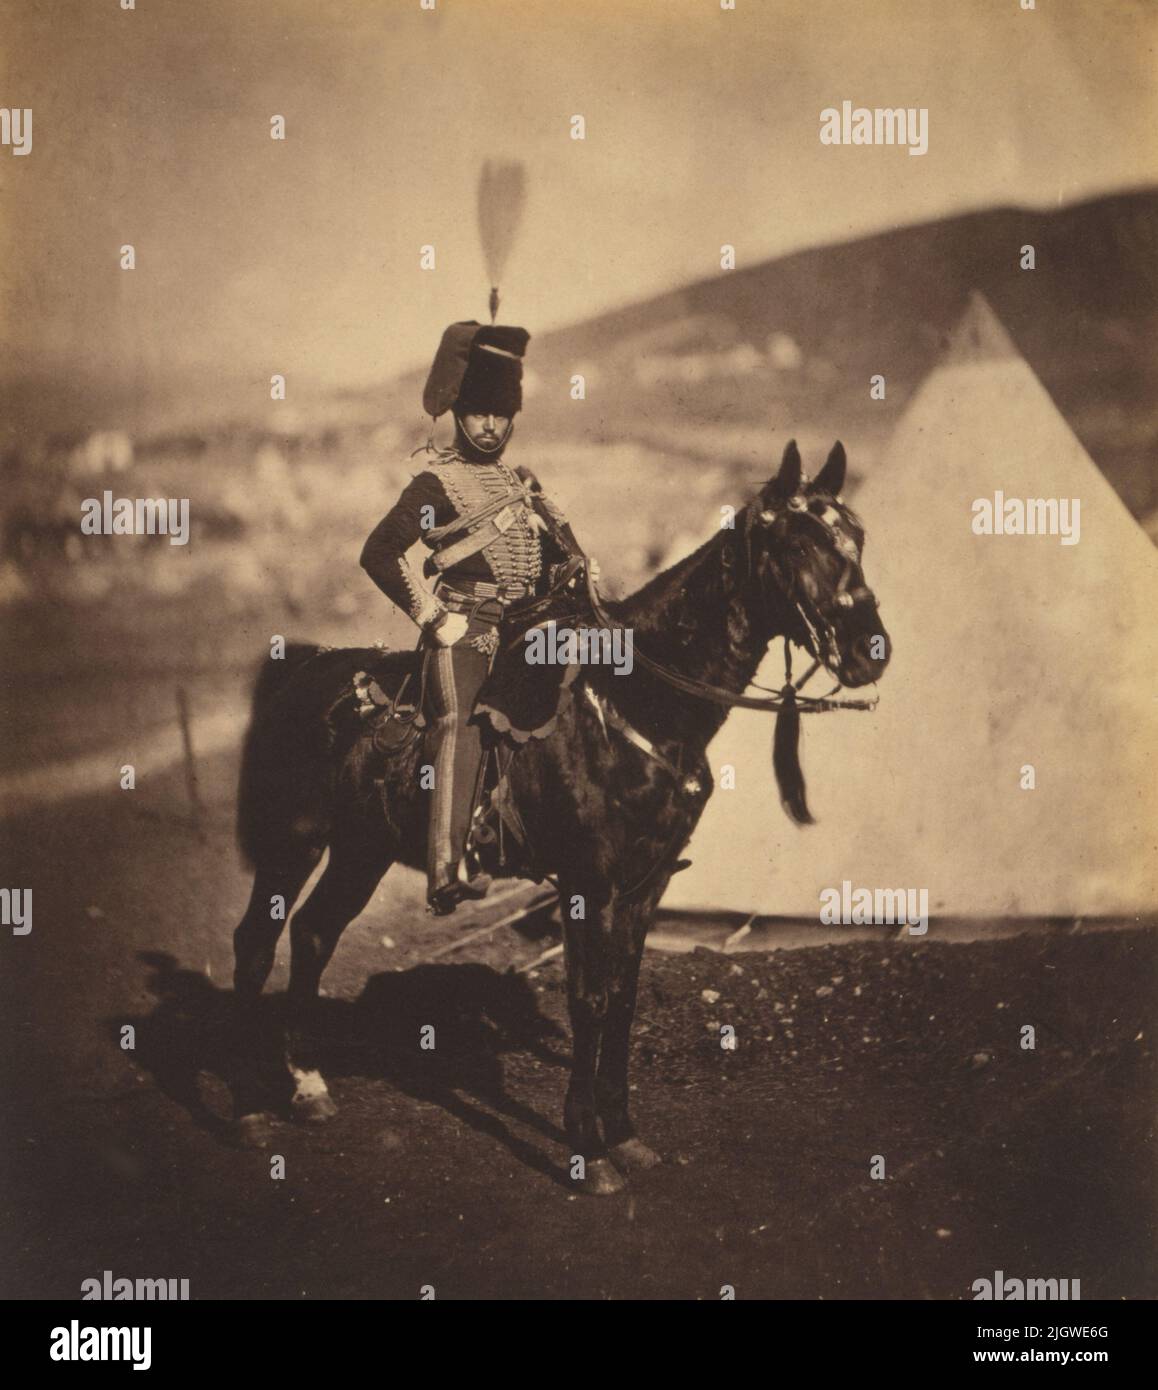 Ein Vintage-Foto um 1855 von Cornet John Wilkin von den britischen 11. Hussaren zu Pferd während des Krimkrieges von 1853 bis 1856. Aufgenommen vom Fotografen Roger Fenton Stockfoto